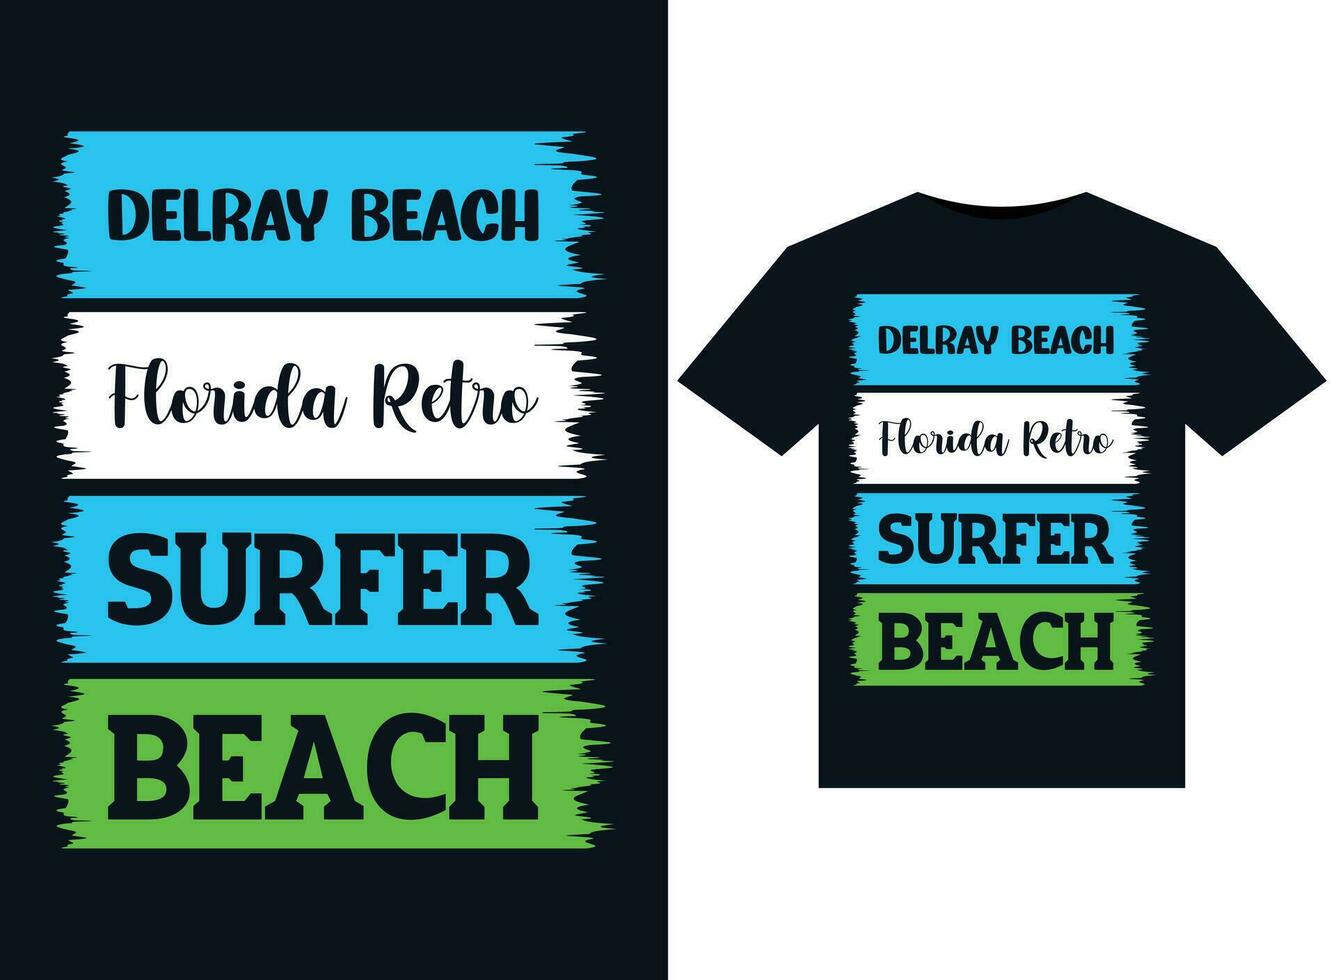 dröjsmål strand florida retro surfare strand illustrationer för tryckfärdig t-tröjor design vektor